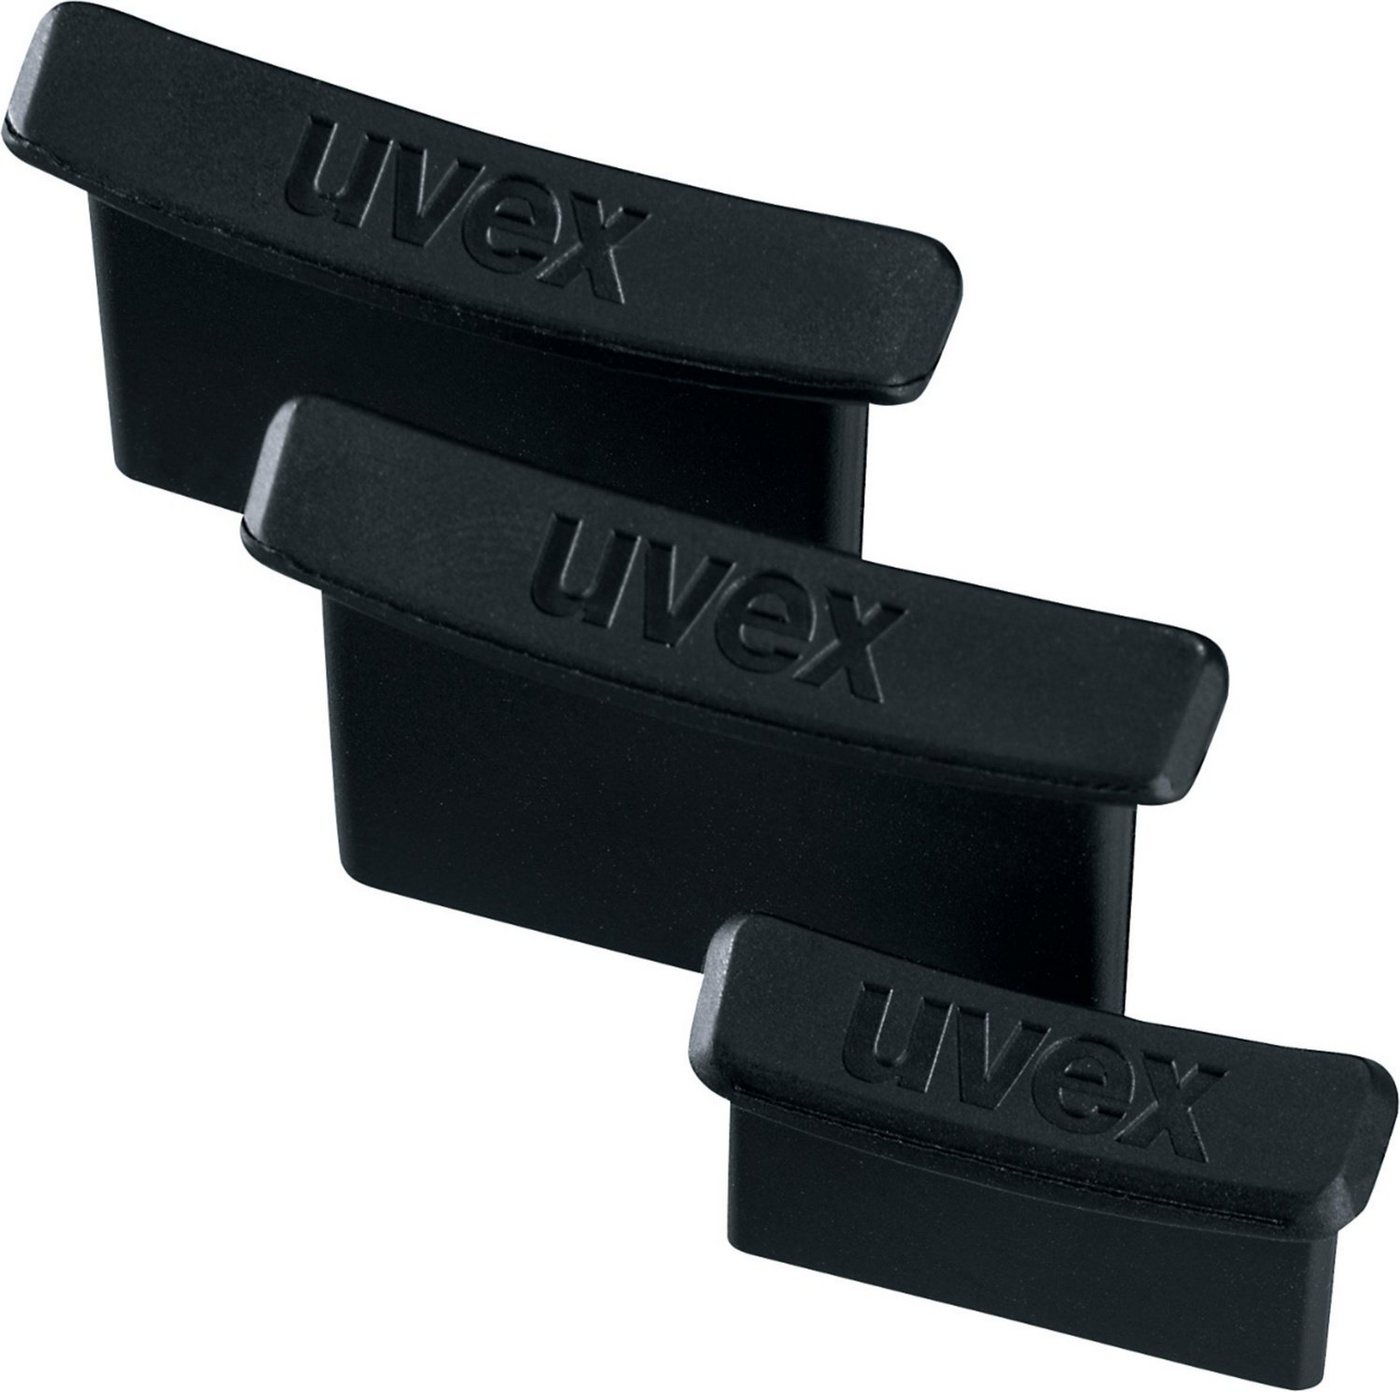 Uvex Kopfschutz von Uvex